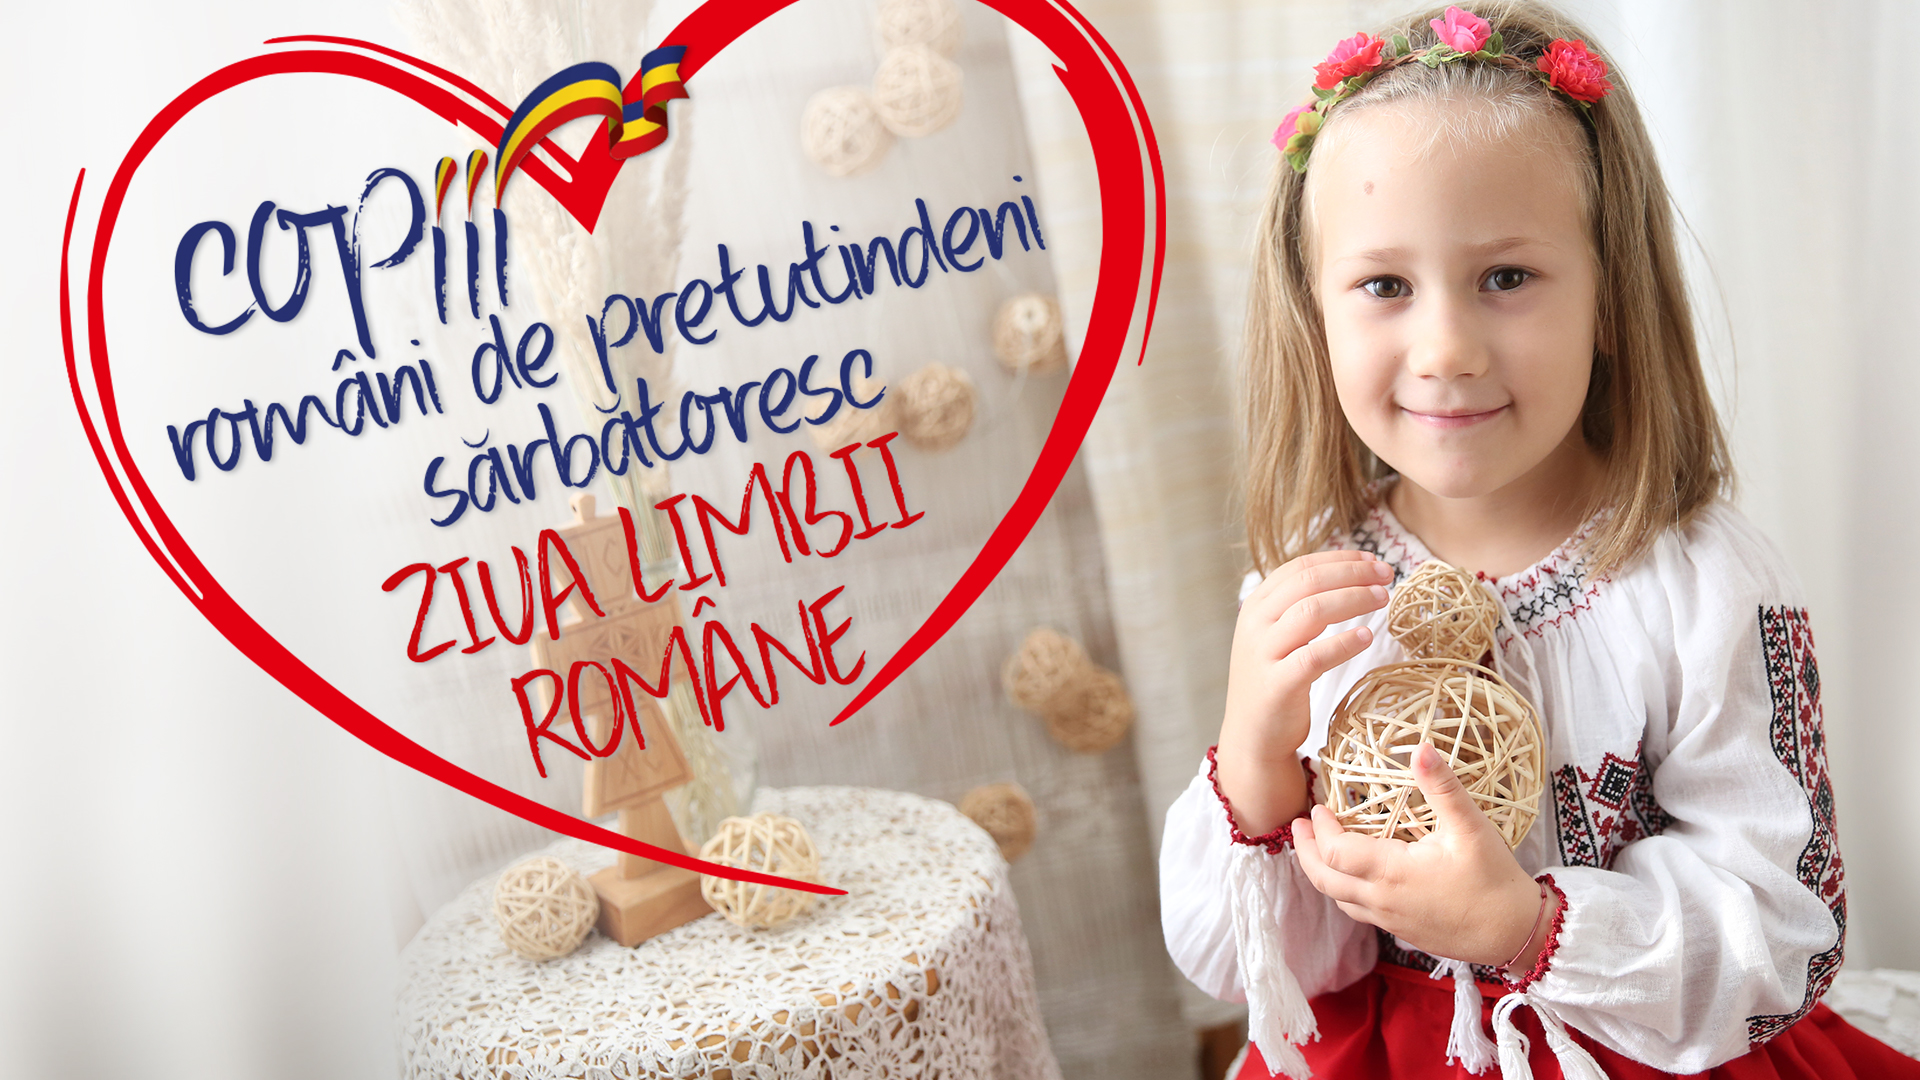 Copiii români de pretutindeni sărbătoresc Ziua Limbii Române